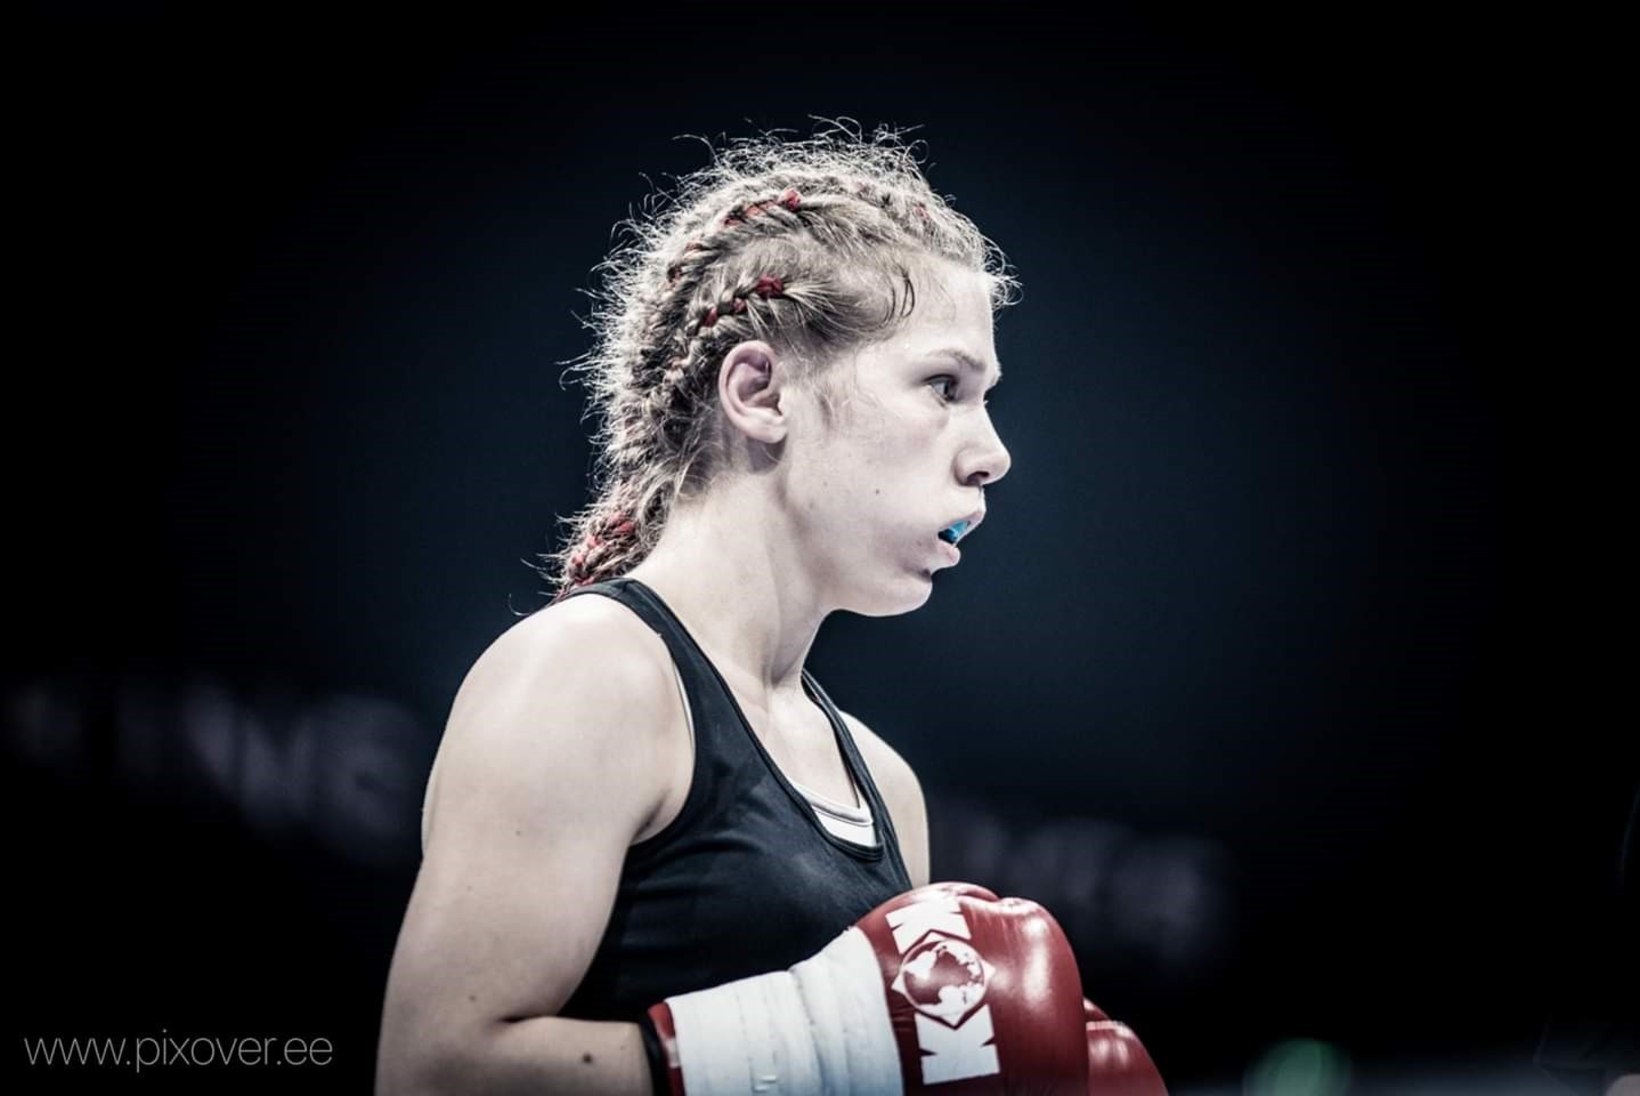 Tai poksi treener Astrid Johanna Grents: poks on väga tõhus rasvapõletaja ja sobib suurepäraselt ka naistele